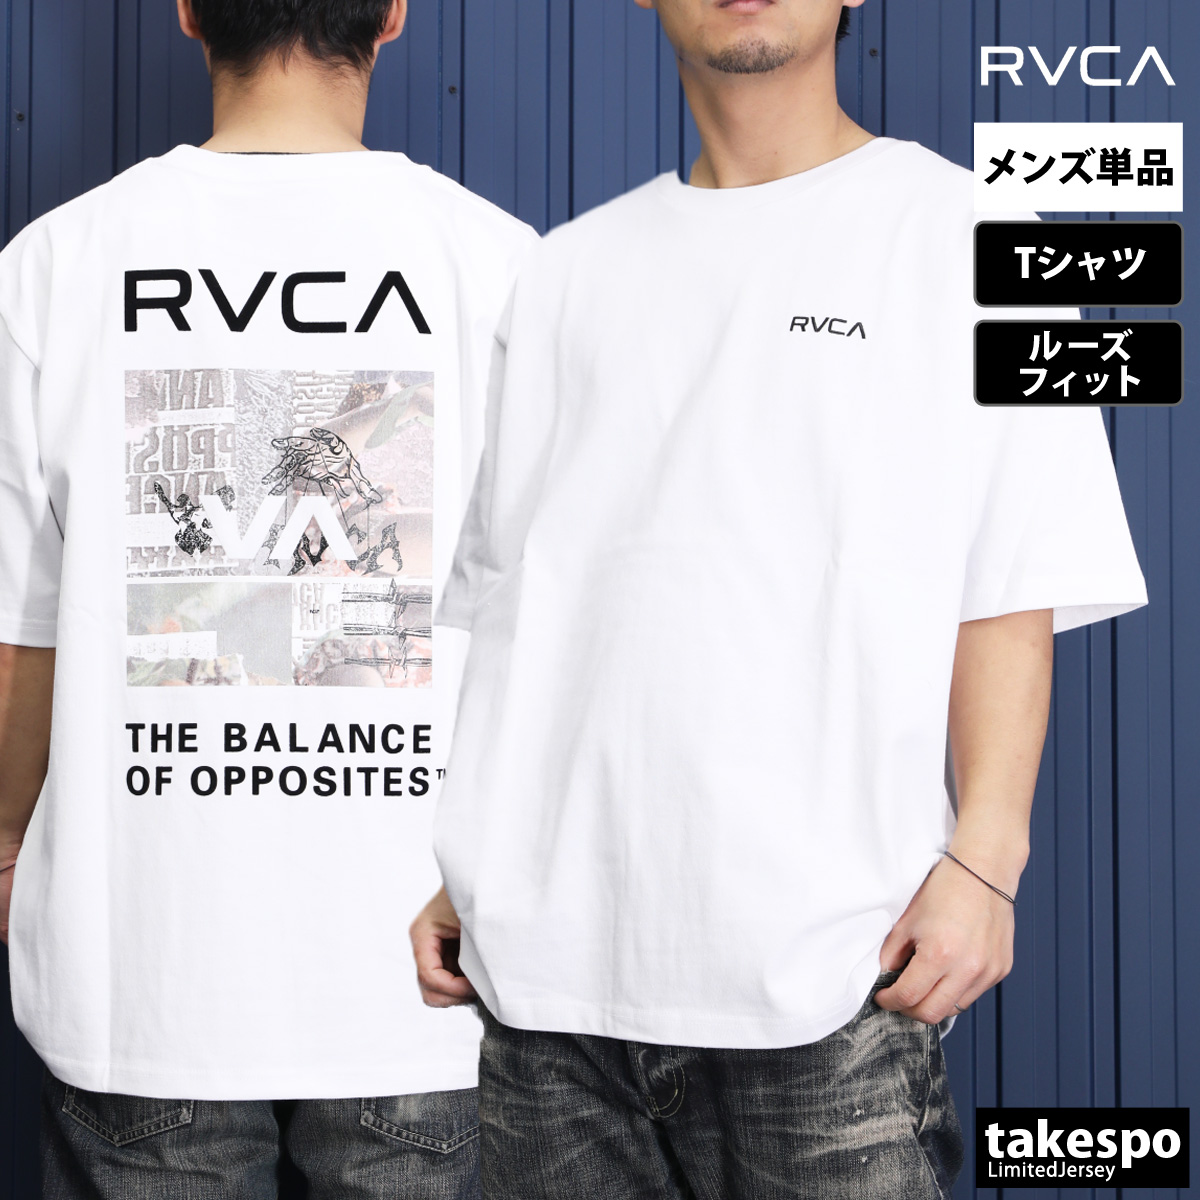 ルーカ Tシャツ メンズ 上 RVCA バックプリント付き 半袖 ボックスT ゆったり BE0412...